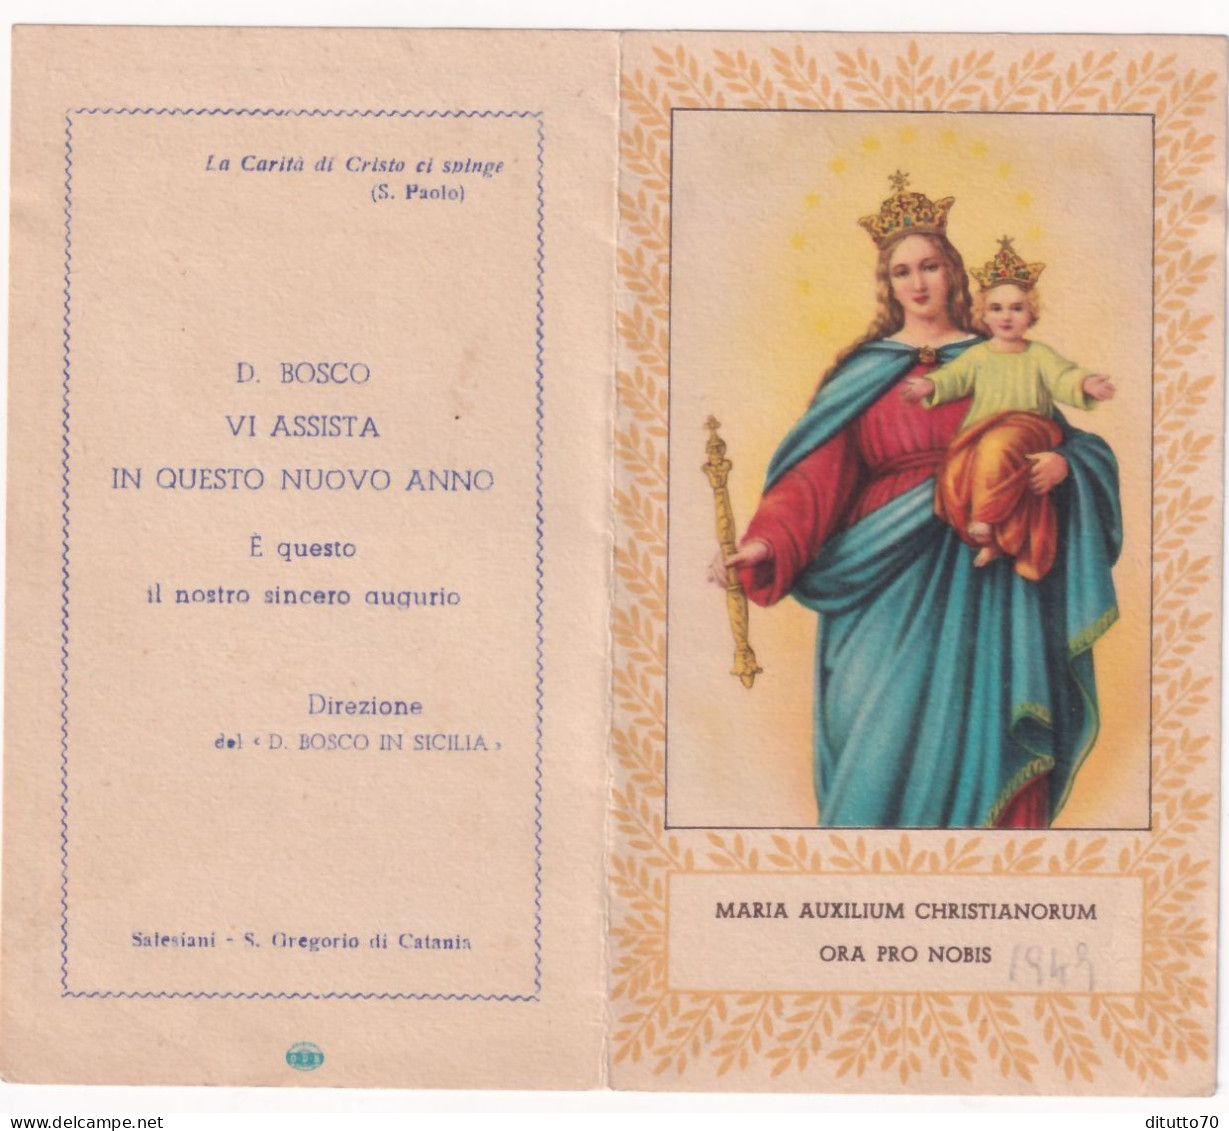 Calendarietto - Salesiano - Direzione Del D.bosco In Sicilia - Anno 1949 - Small : 1941-60